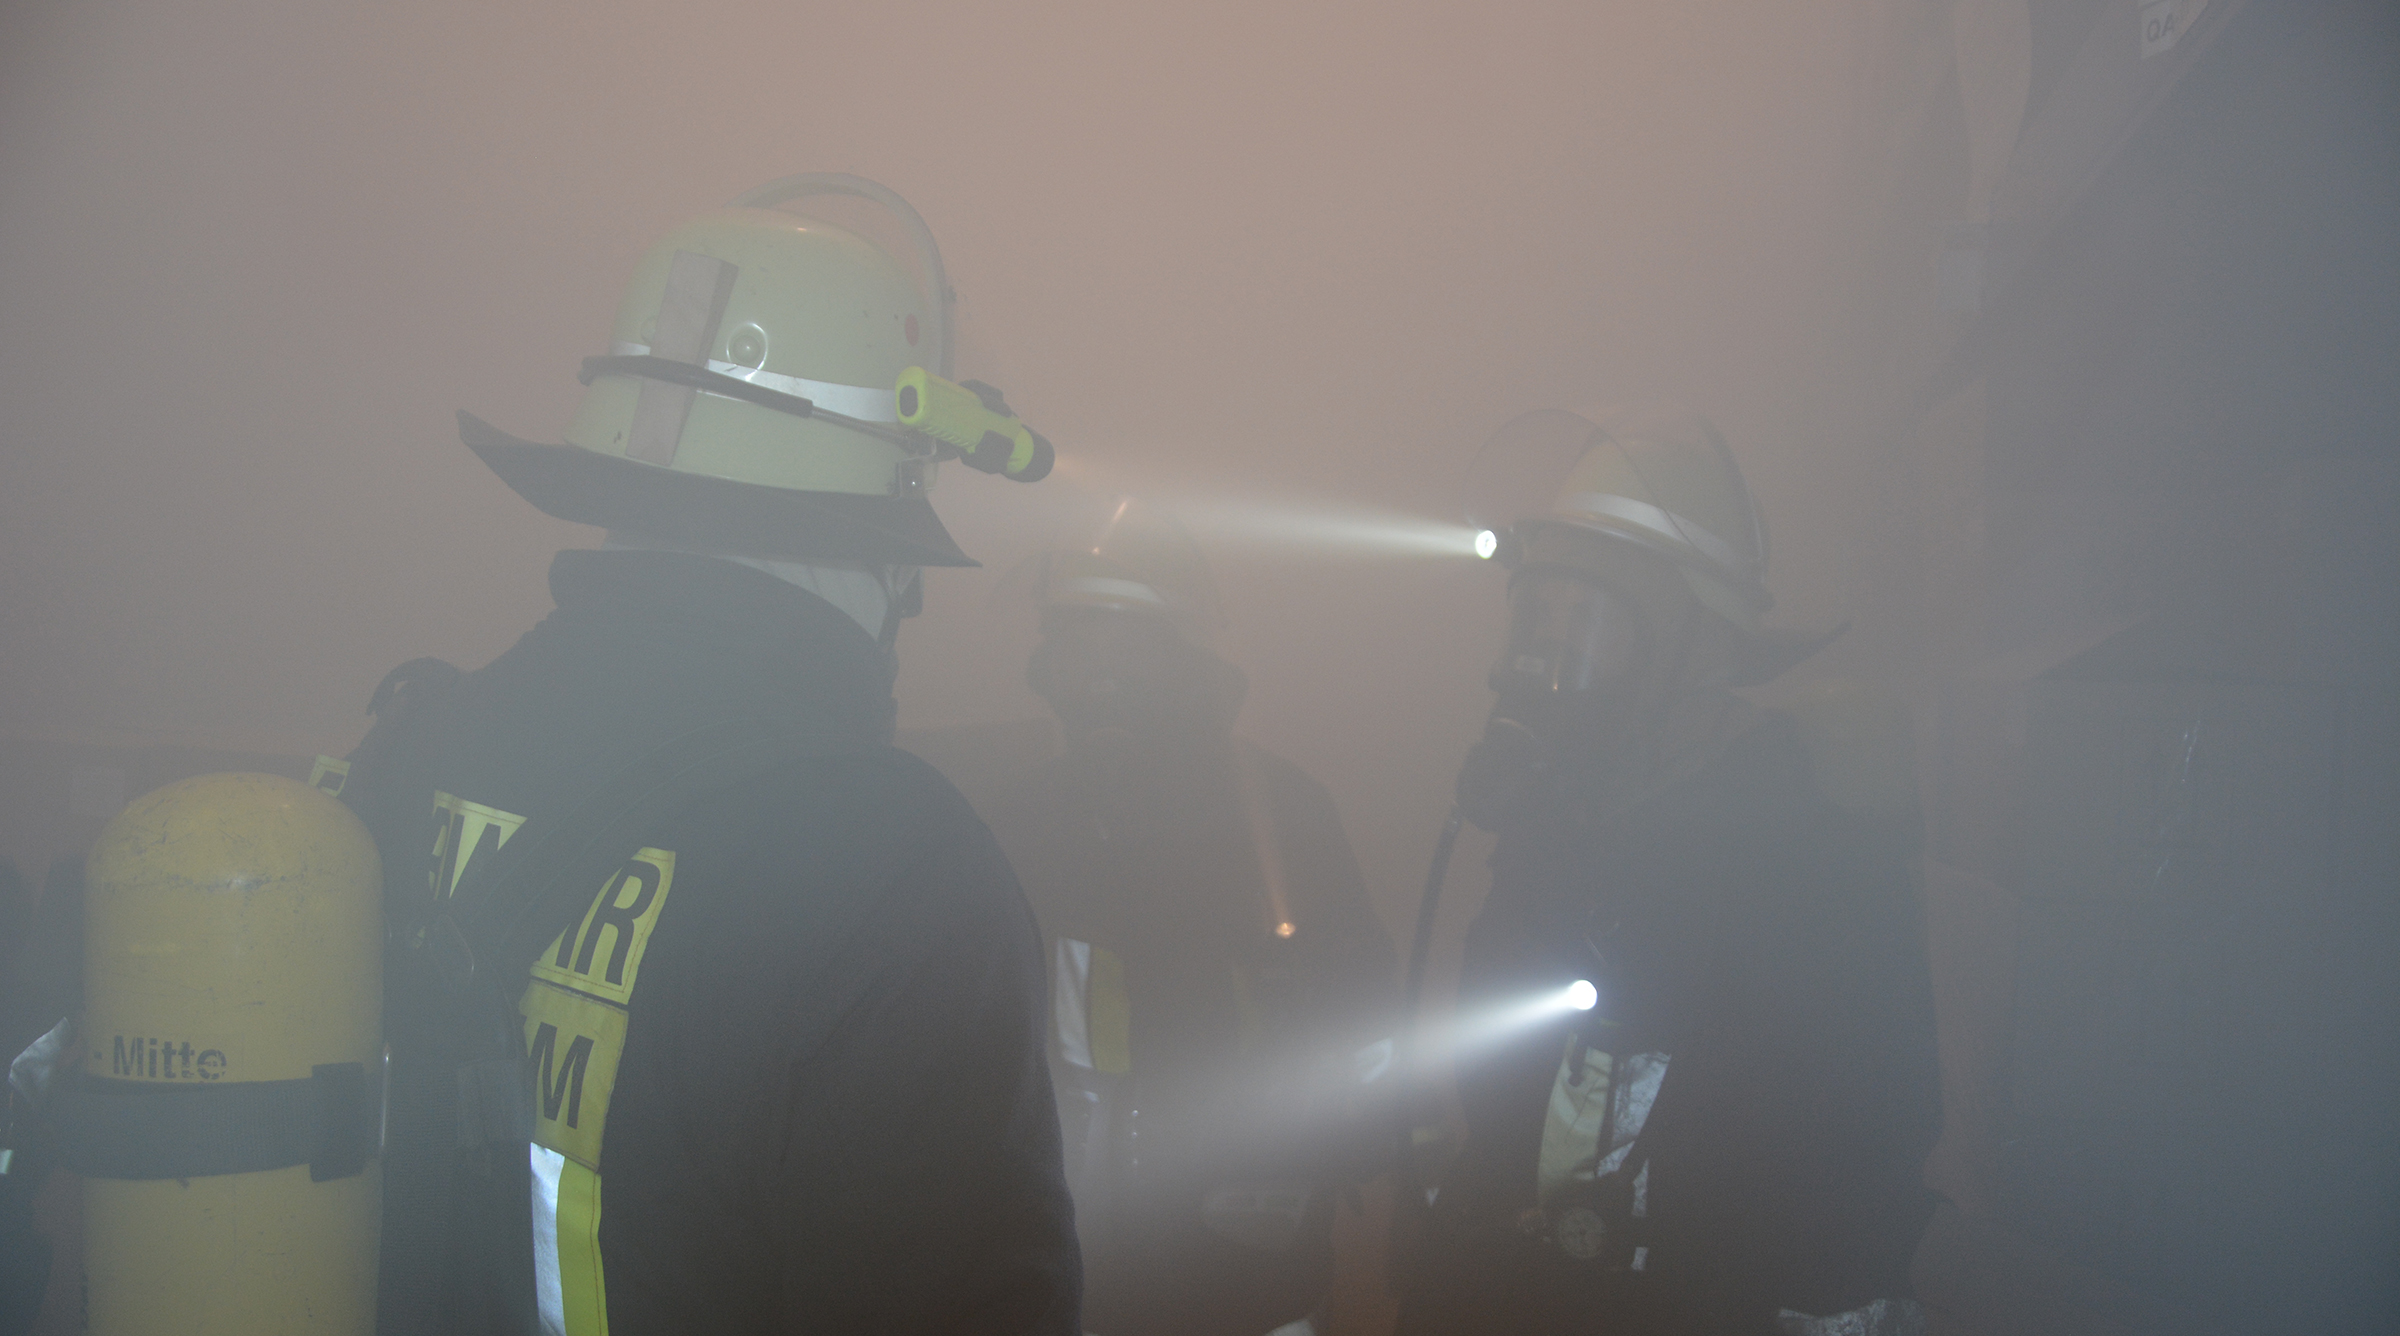 Freiwillige Feuerwehr Bensheim-Mitte e.V.